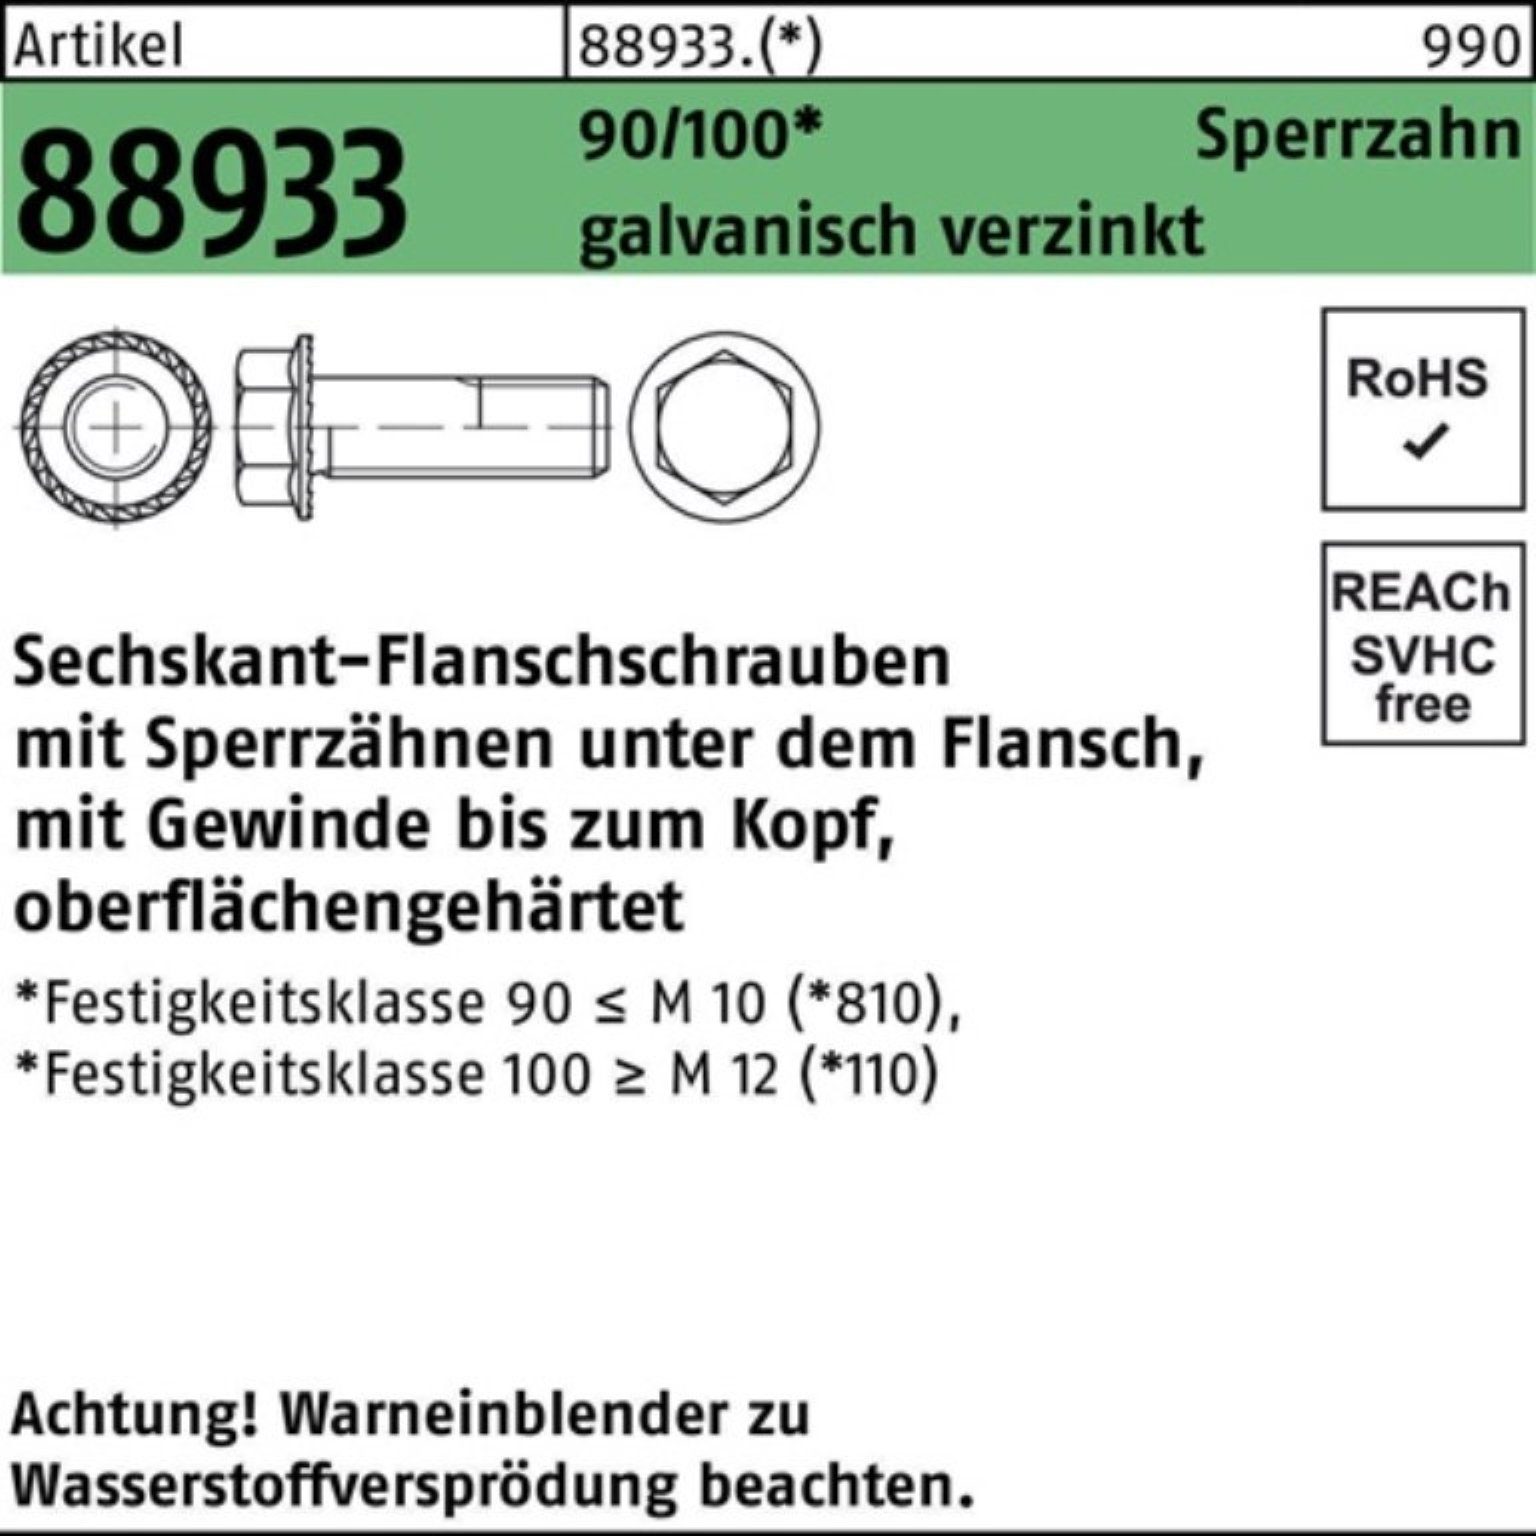 Pack Sechskantflanschschraube VG Reyher 100er galv 100 88933 R Sperrz. Schraube M12x25